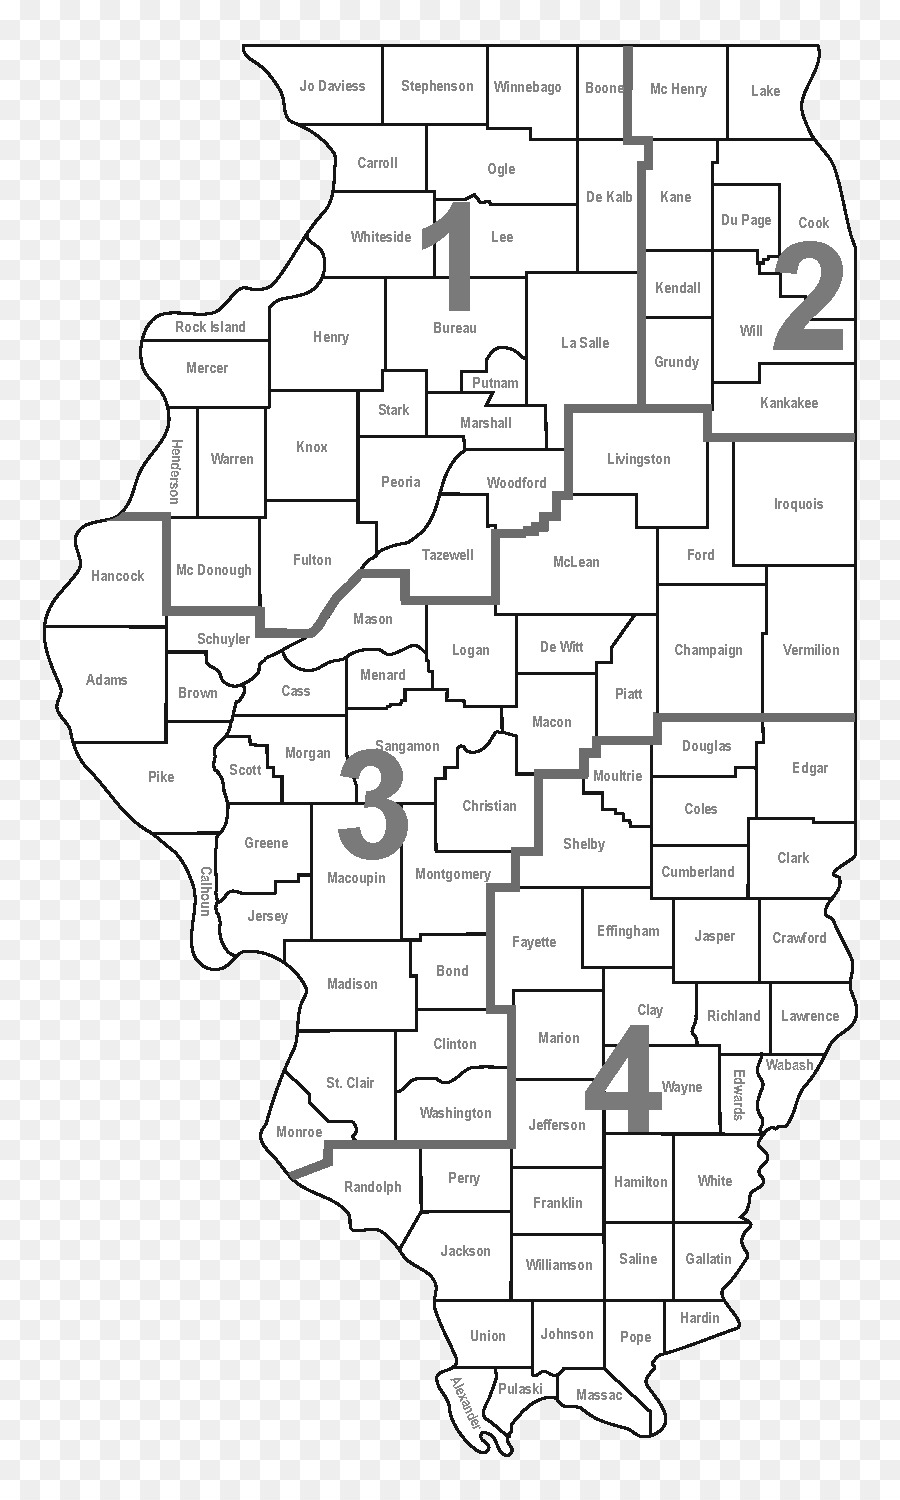 Iroquois County, Illinois Coles County, Illinois Northeastern Illinois University Illinois Dipartimento delle Risorse Naturali - elmore county public school di sistema